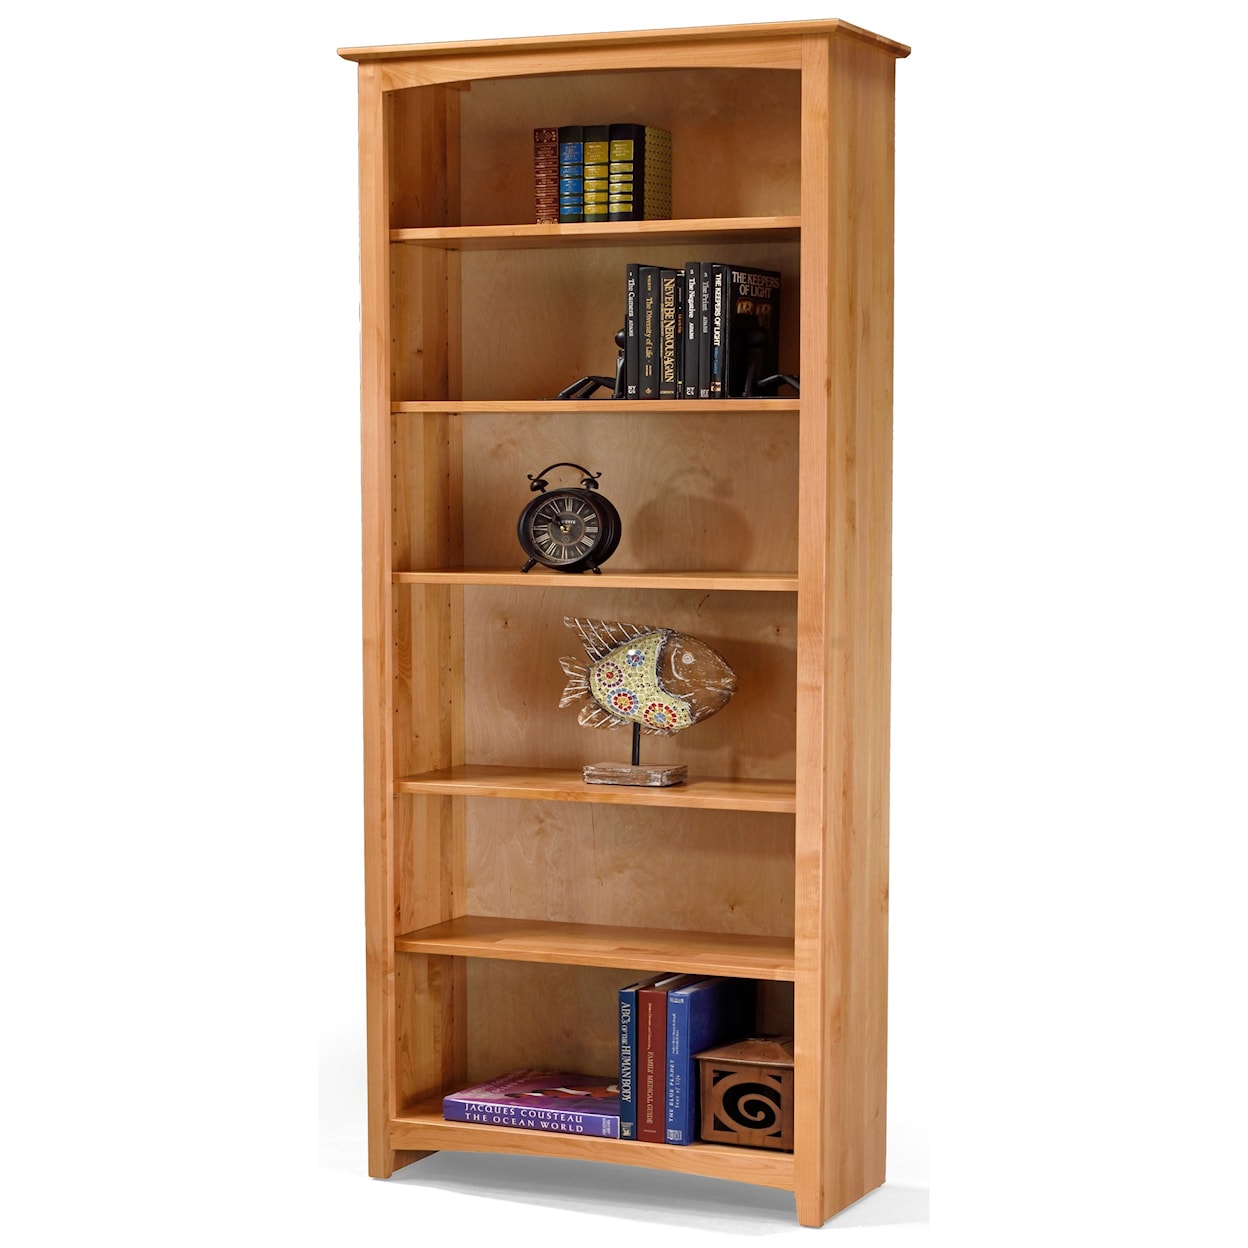 Archbold Furniture Alder Bookcases 84" Tall Bookcase